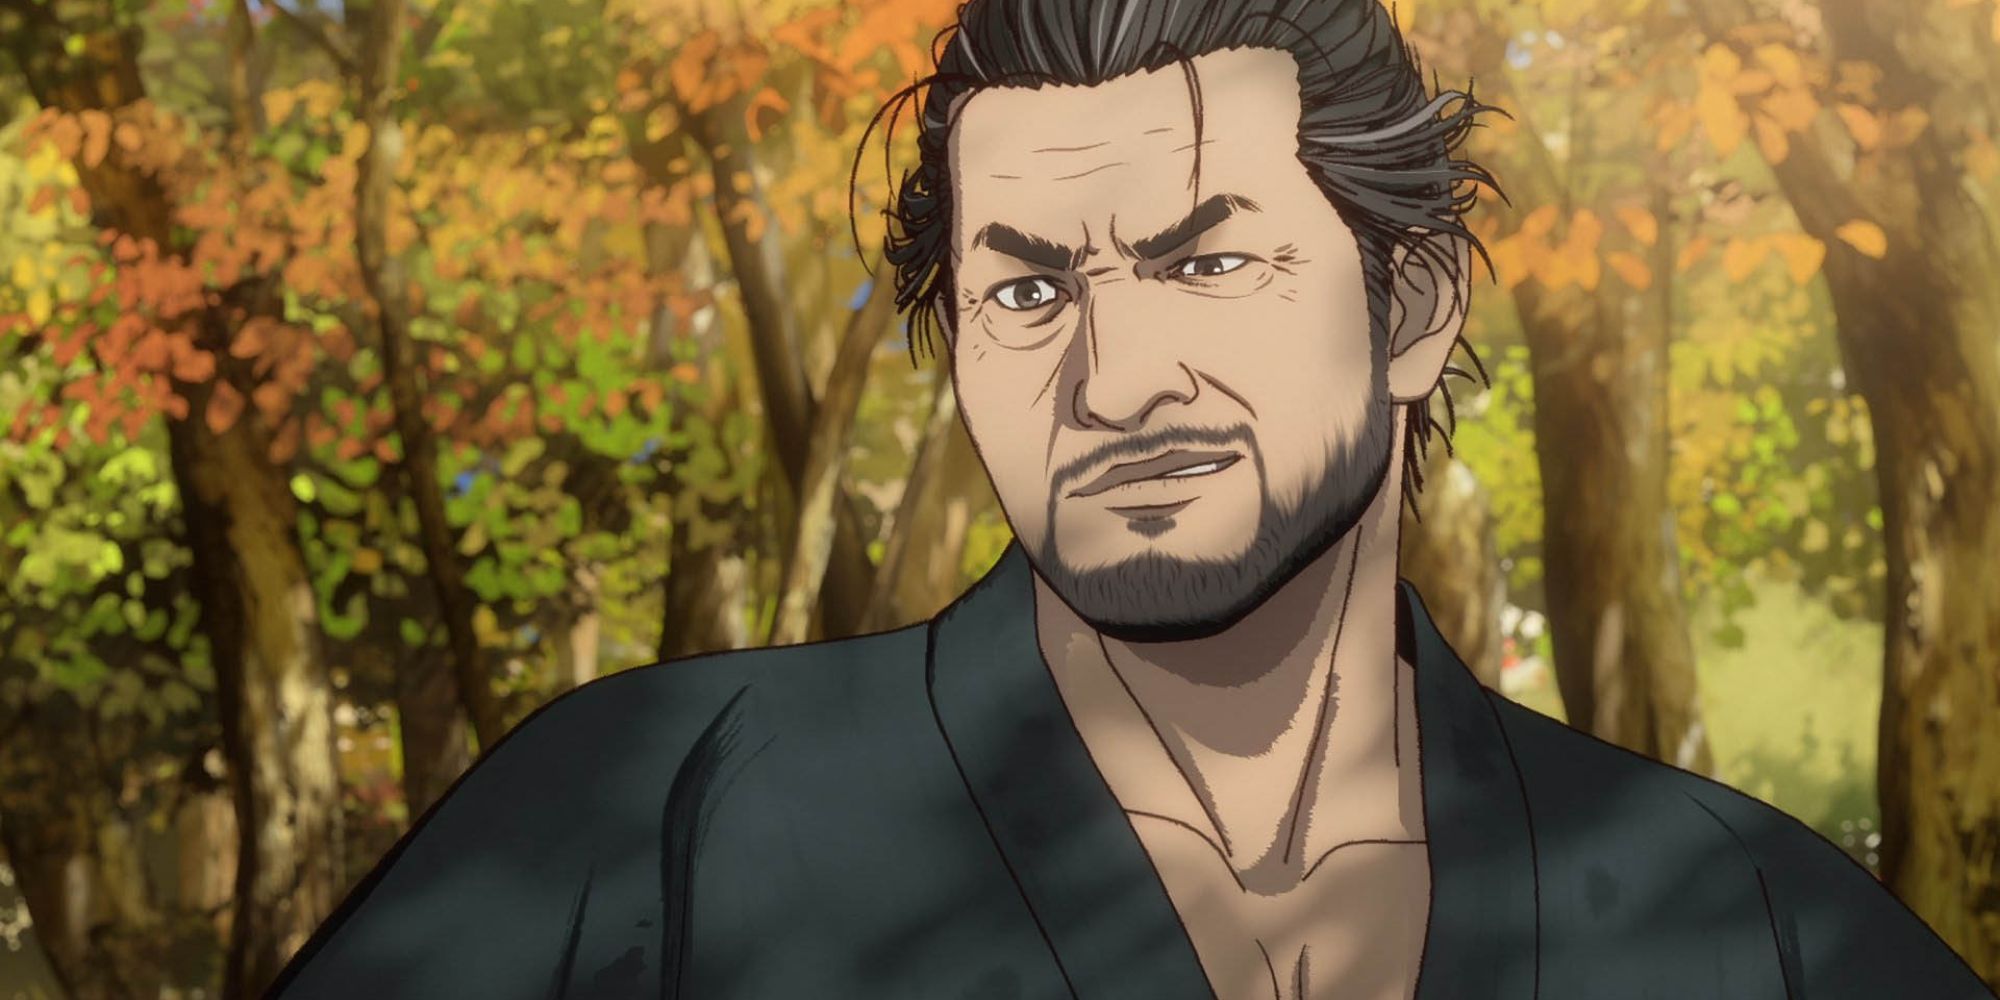 Miyamoto Musashi: Souken ni Haseru Yume 